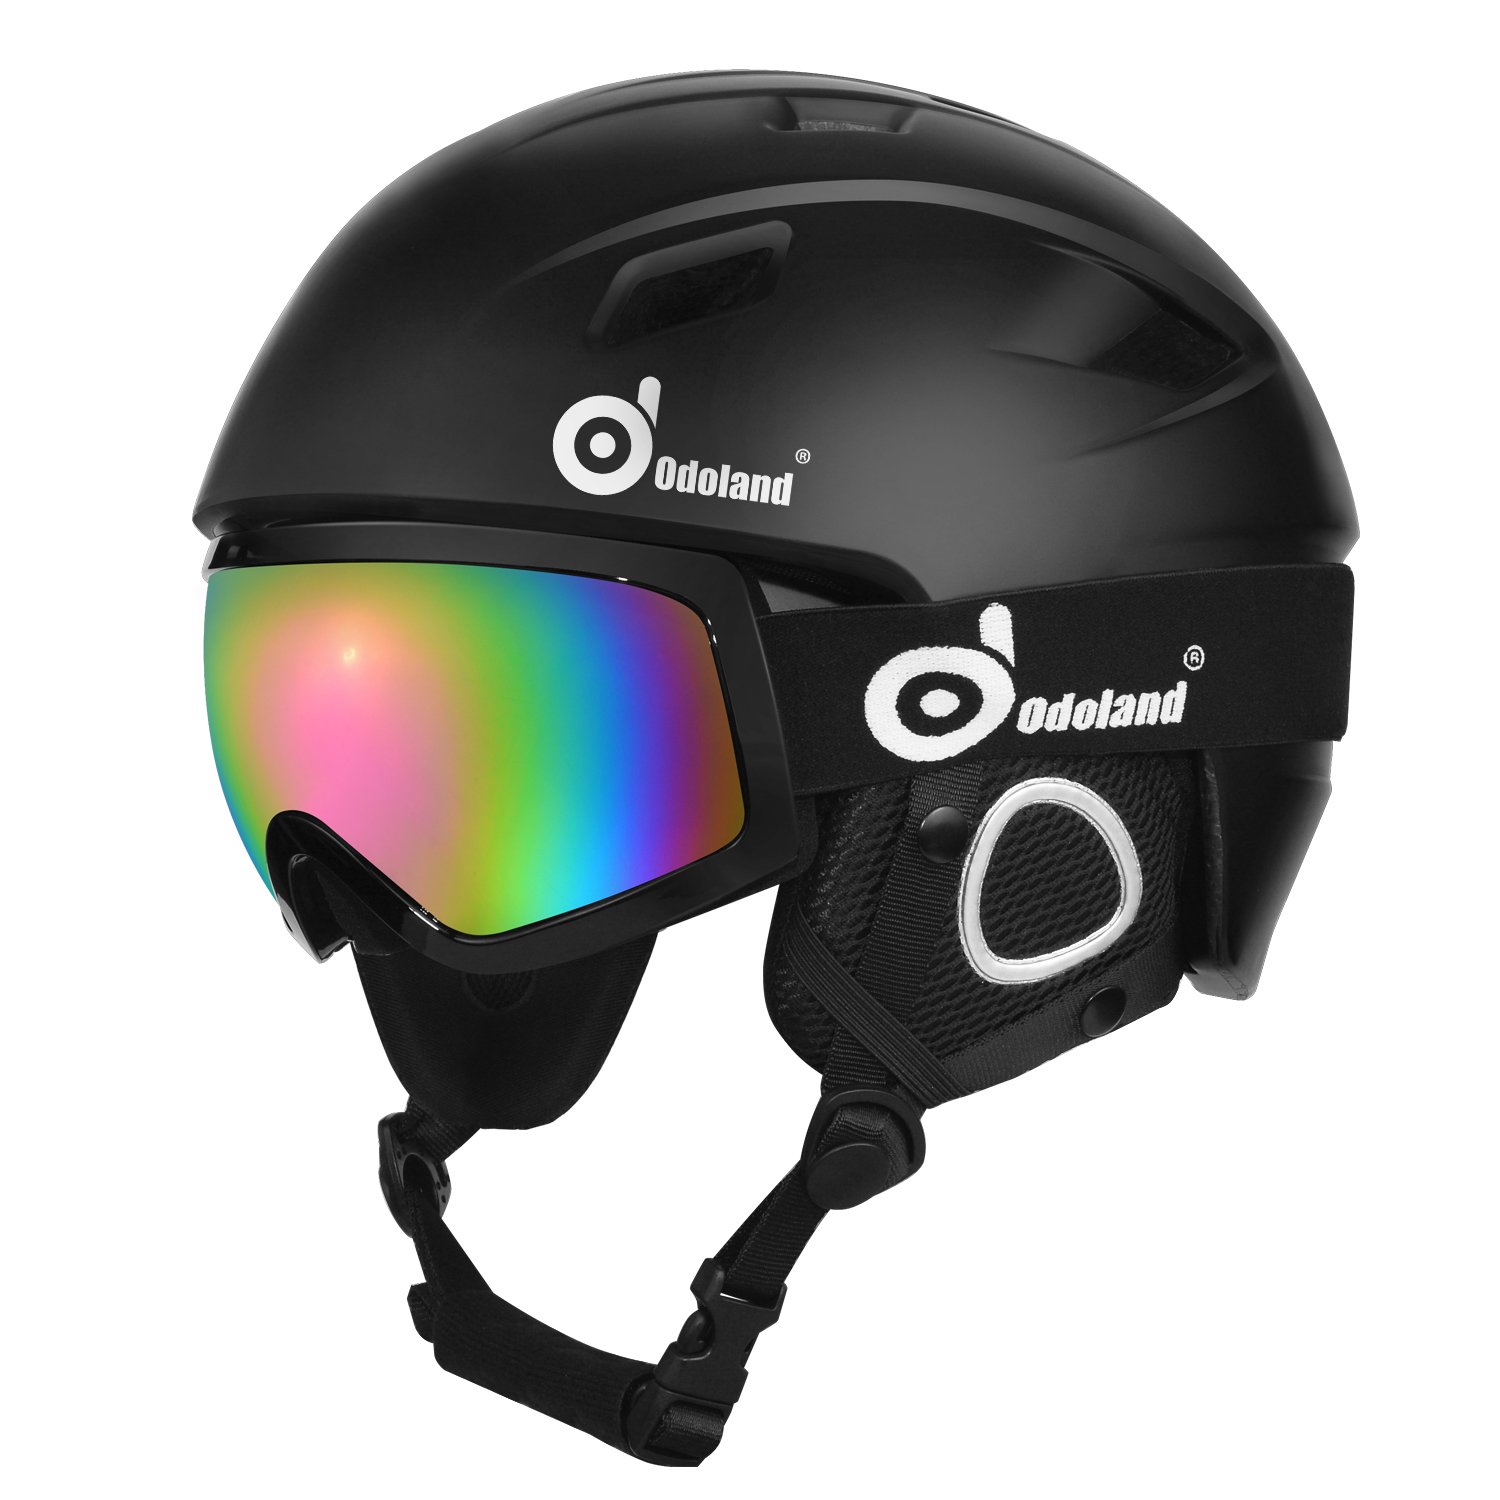 Odoland Ski Helmet with Ski Goggles, Light Weight Snowboard Helmet and  2-in-1 Visor Detachable Goggles Set, Snow Sport Helmets for Men Women